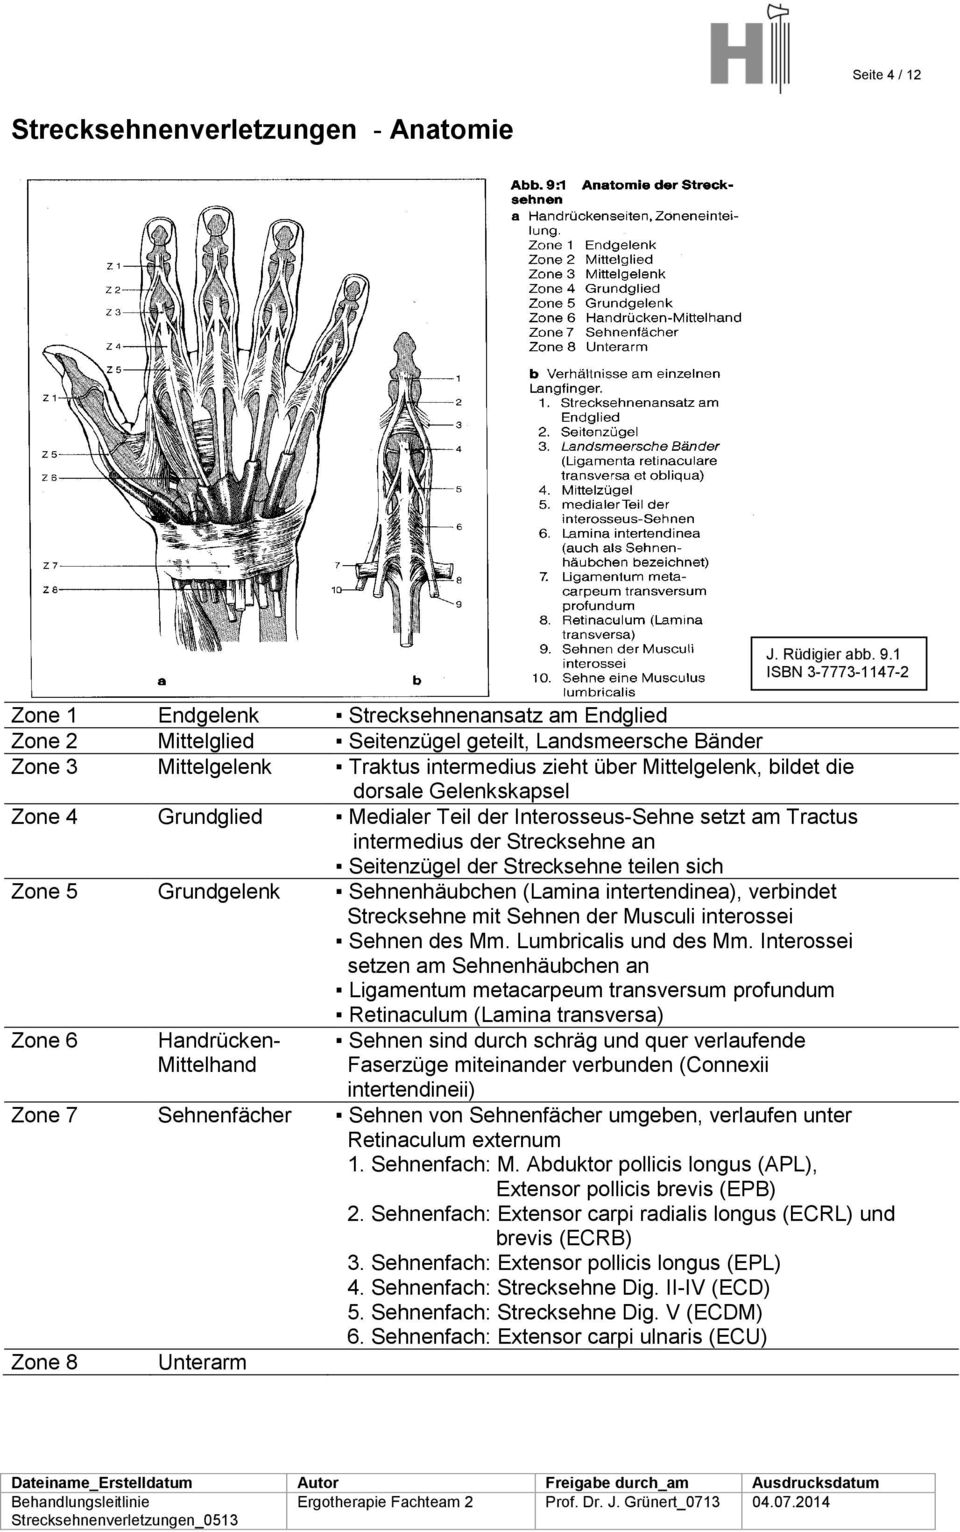 Zone 5 Grundgelenk Sehnenhäubchen (Lamina intertendinea), verbindet Strecksehne mit Sehnen der Musculi interossei Sehnen des Mm. Lumbricalis und des Mm.